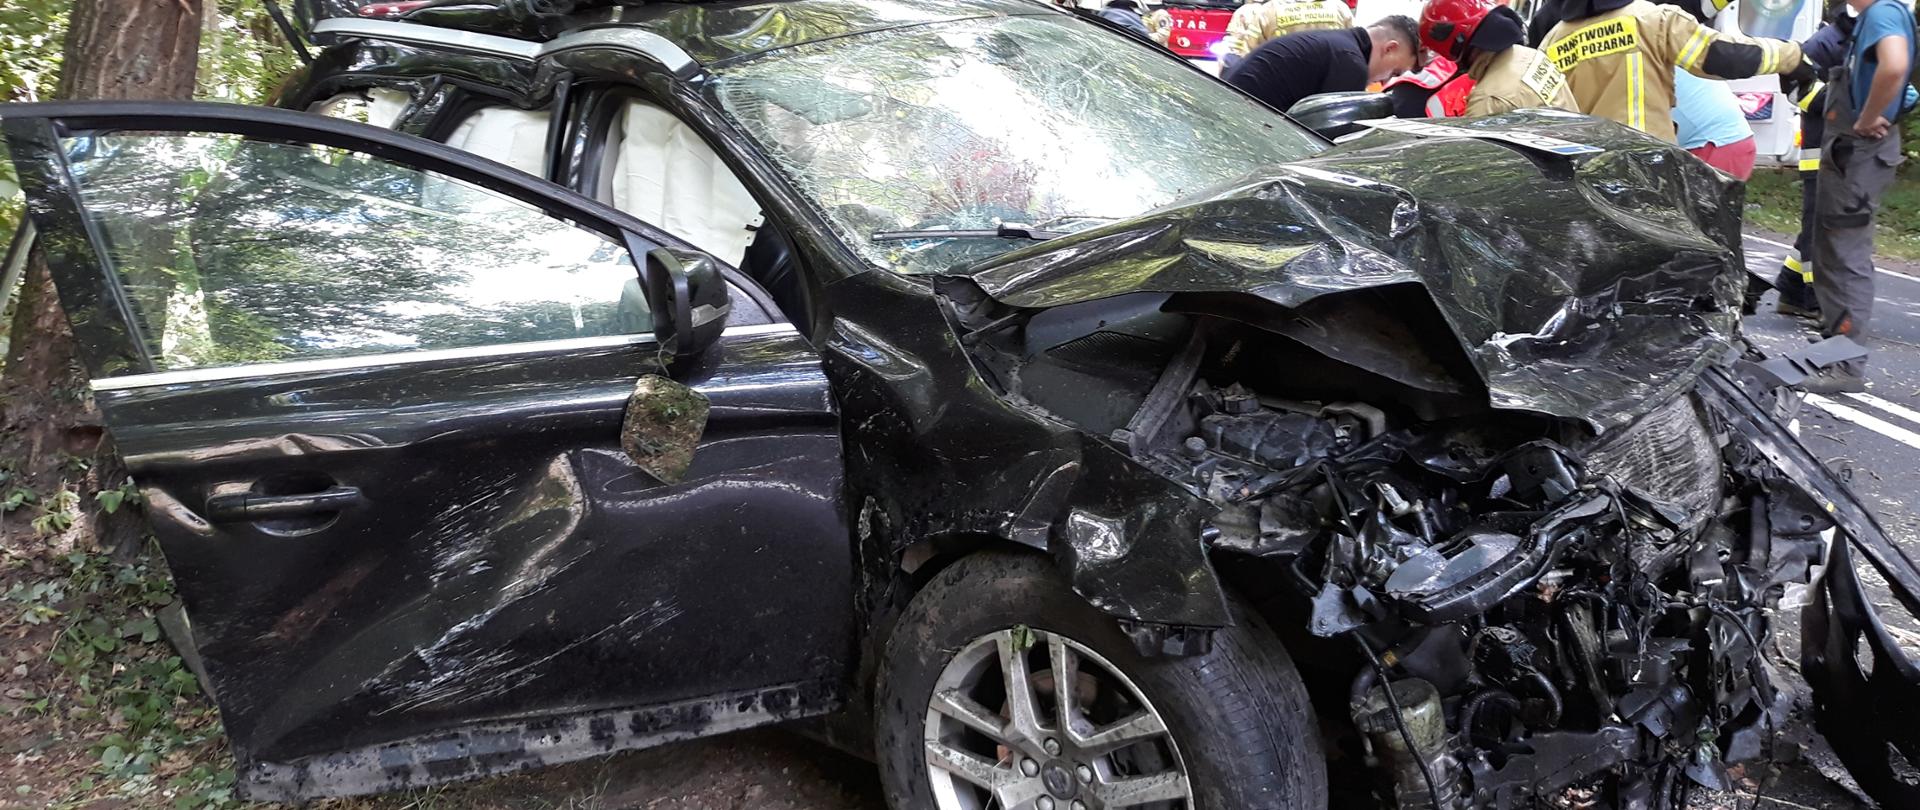 Słonecznie. Czarne auto osobowe kompletnie zniszczone po wypadku. W tle biała karetka ratownictwa medycznego i strażacy w paskowych mundurach i czerwonych hełmach oraz drzewa.